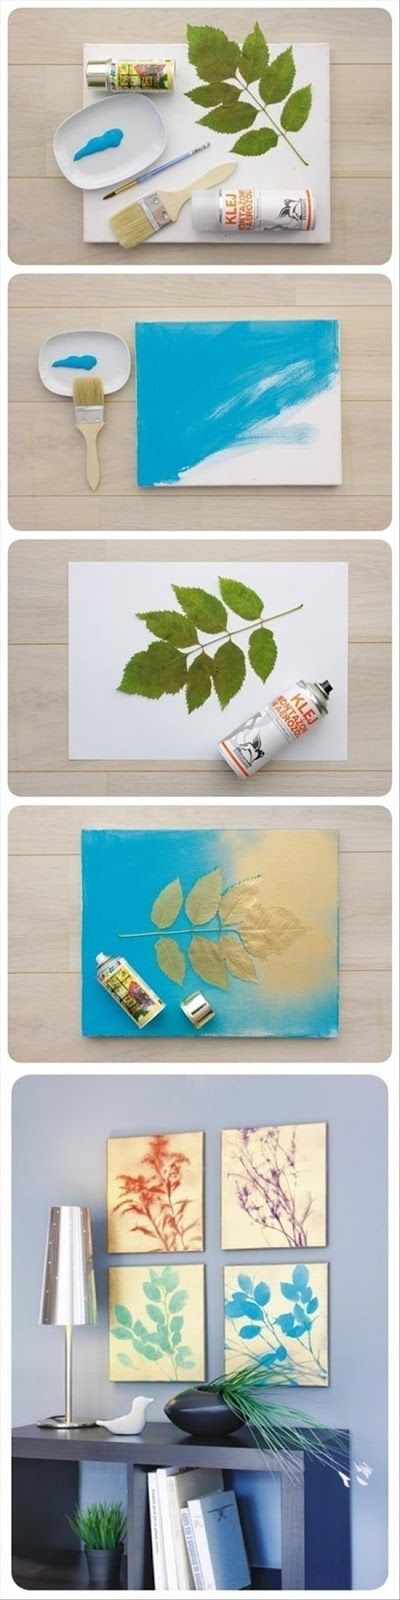 Simple Natural DIY Wall Art With Natural Motifs